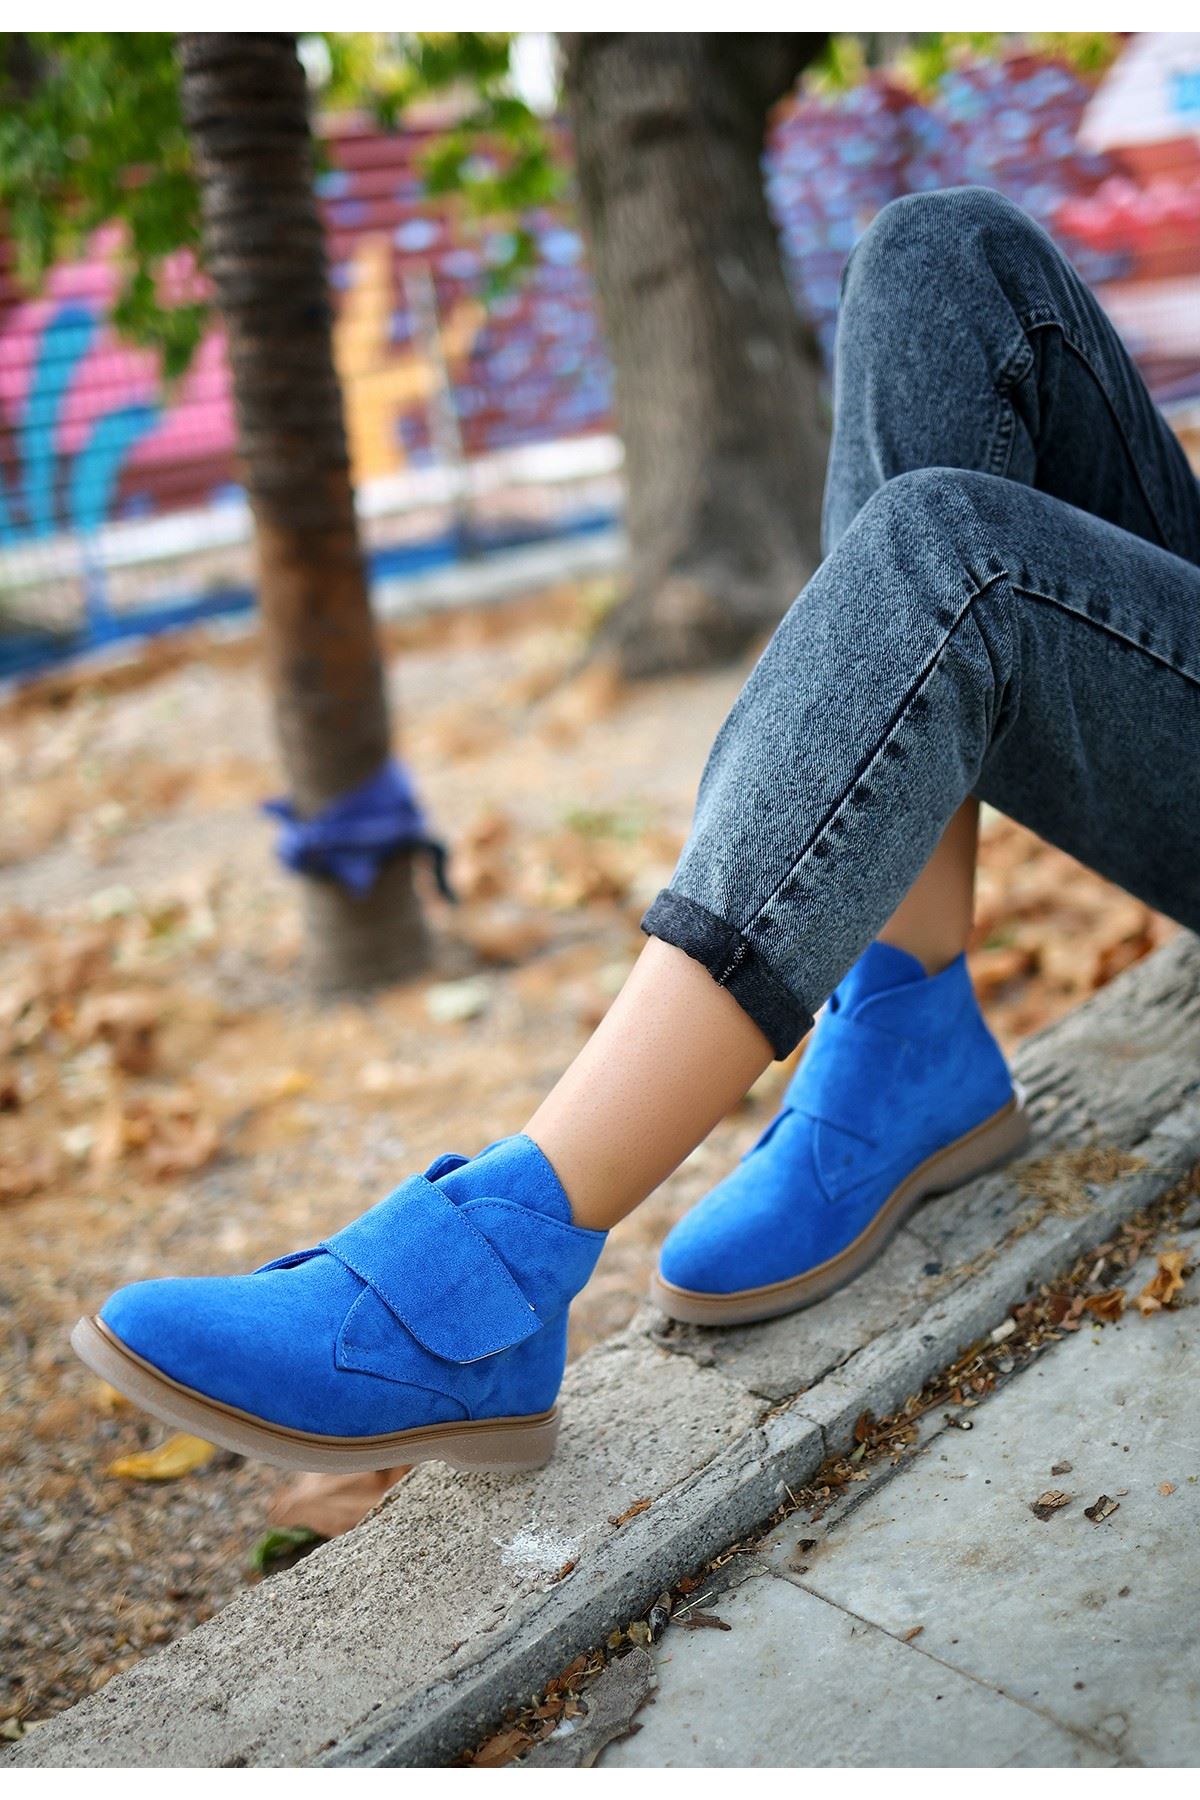 Mida Shoes Zeon Mavi Süet Bağcıklı Kadın Bot